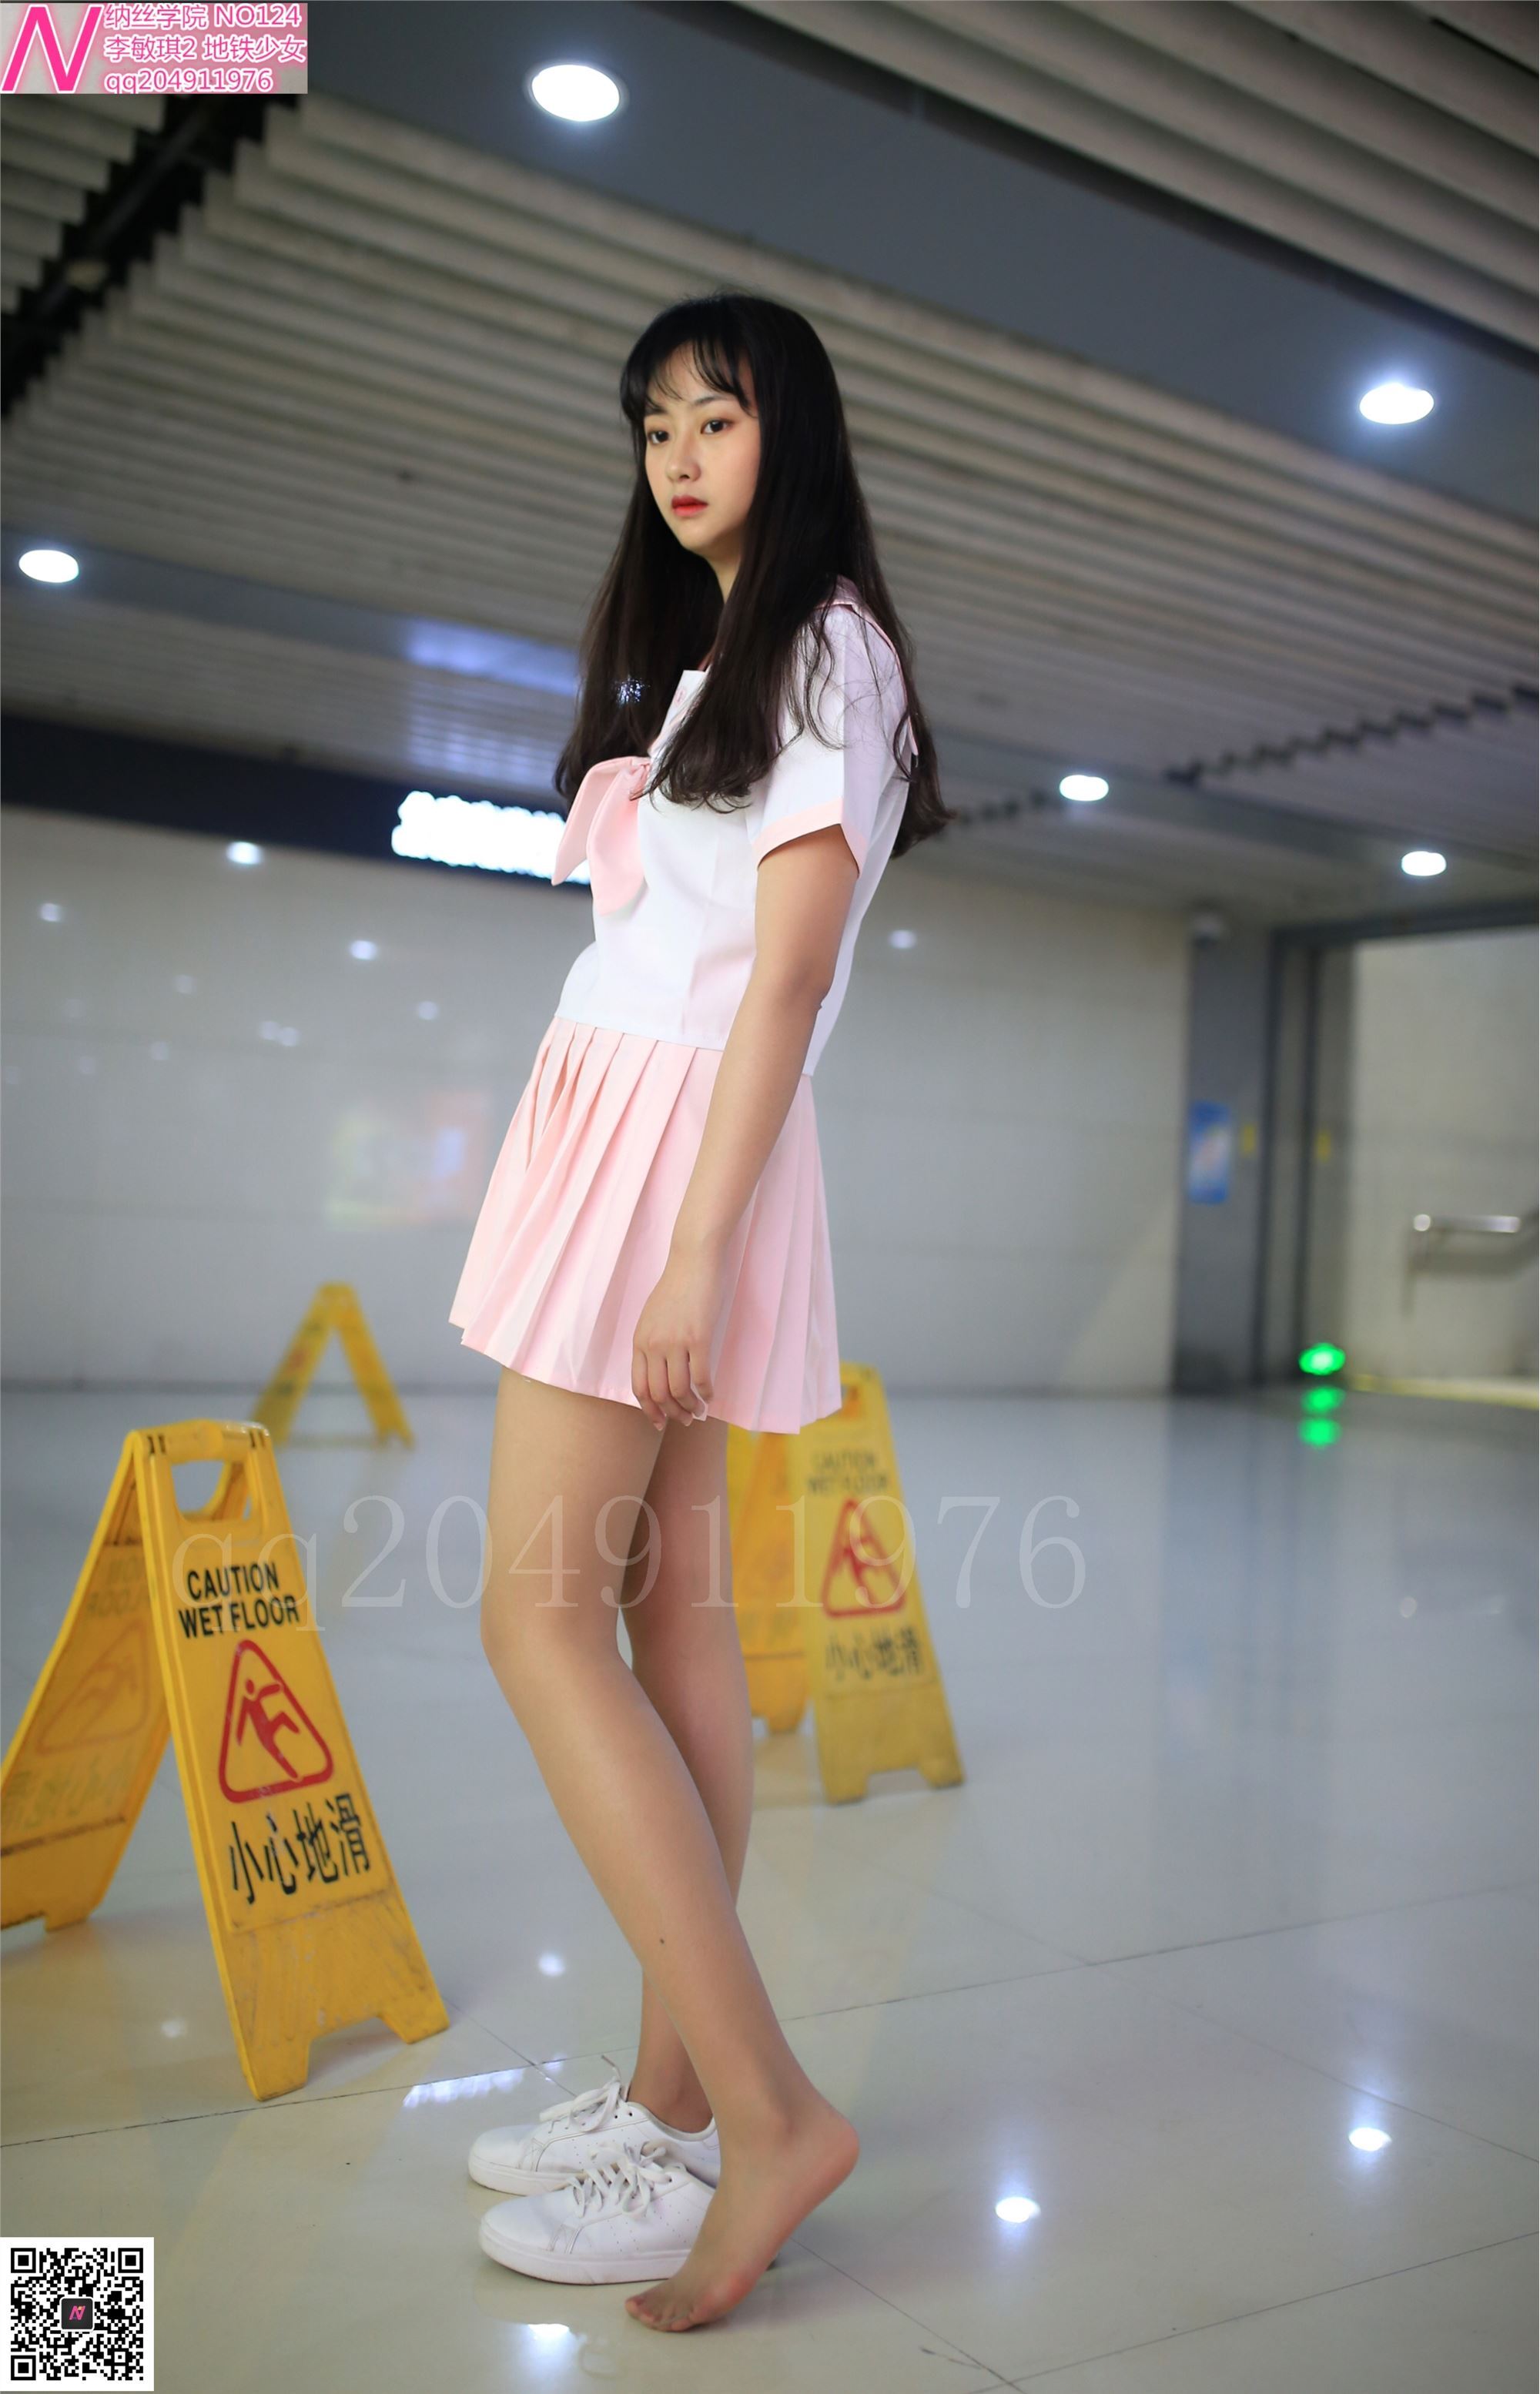 124 photos of Shimin Metro girl 92p Nash